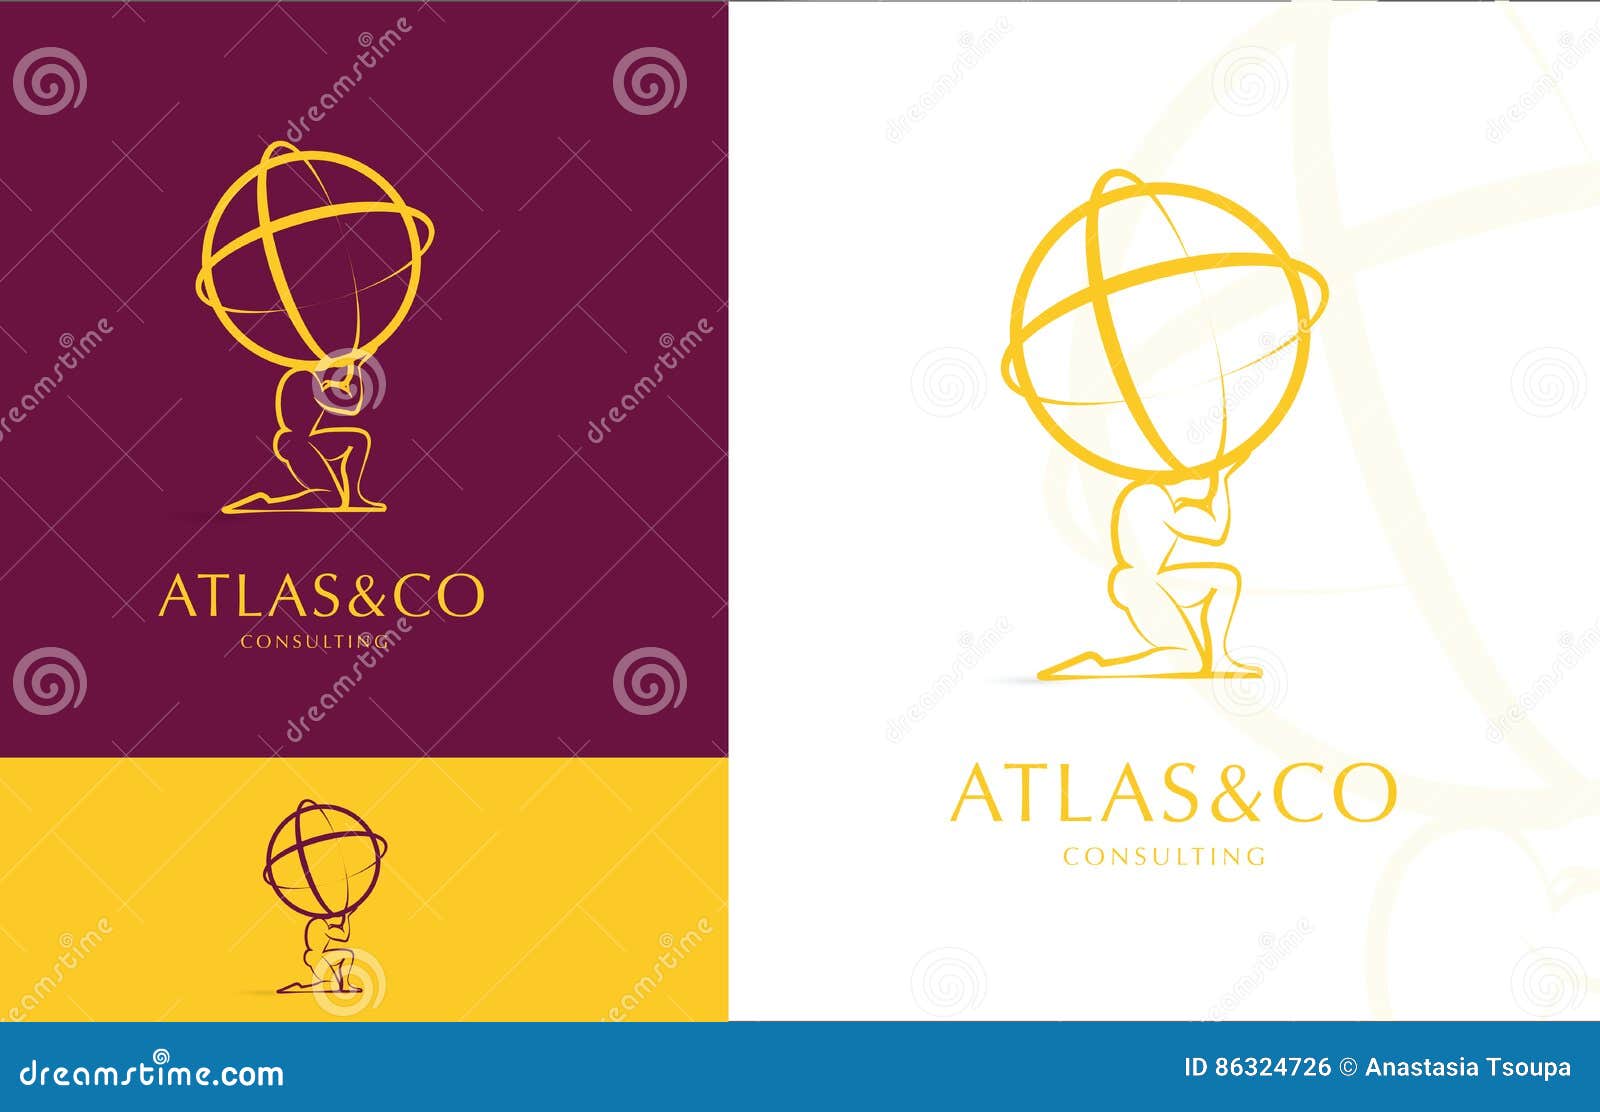 atlas, corporate logo 